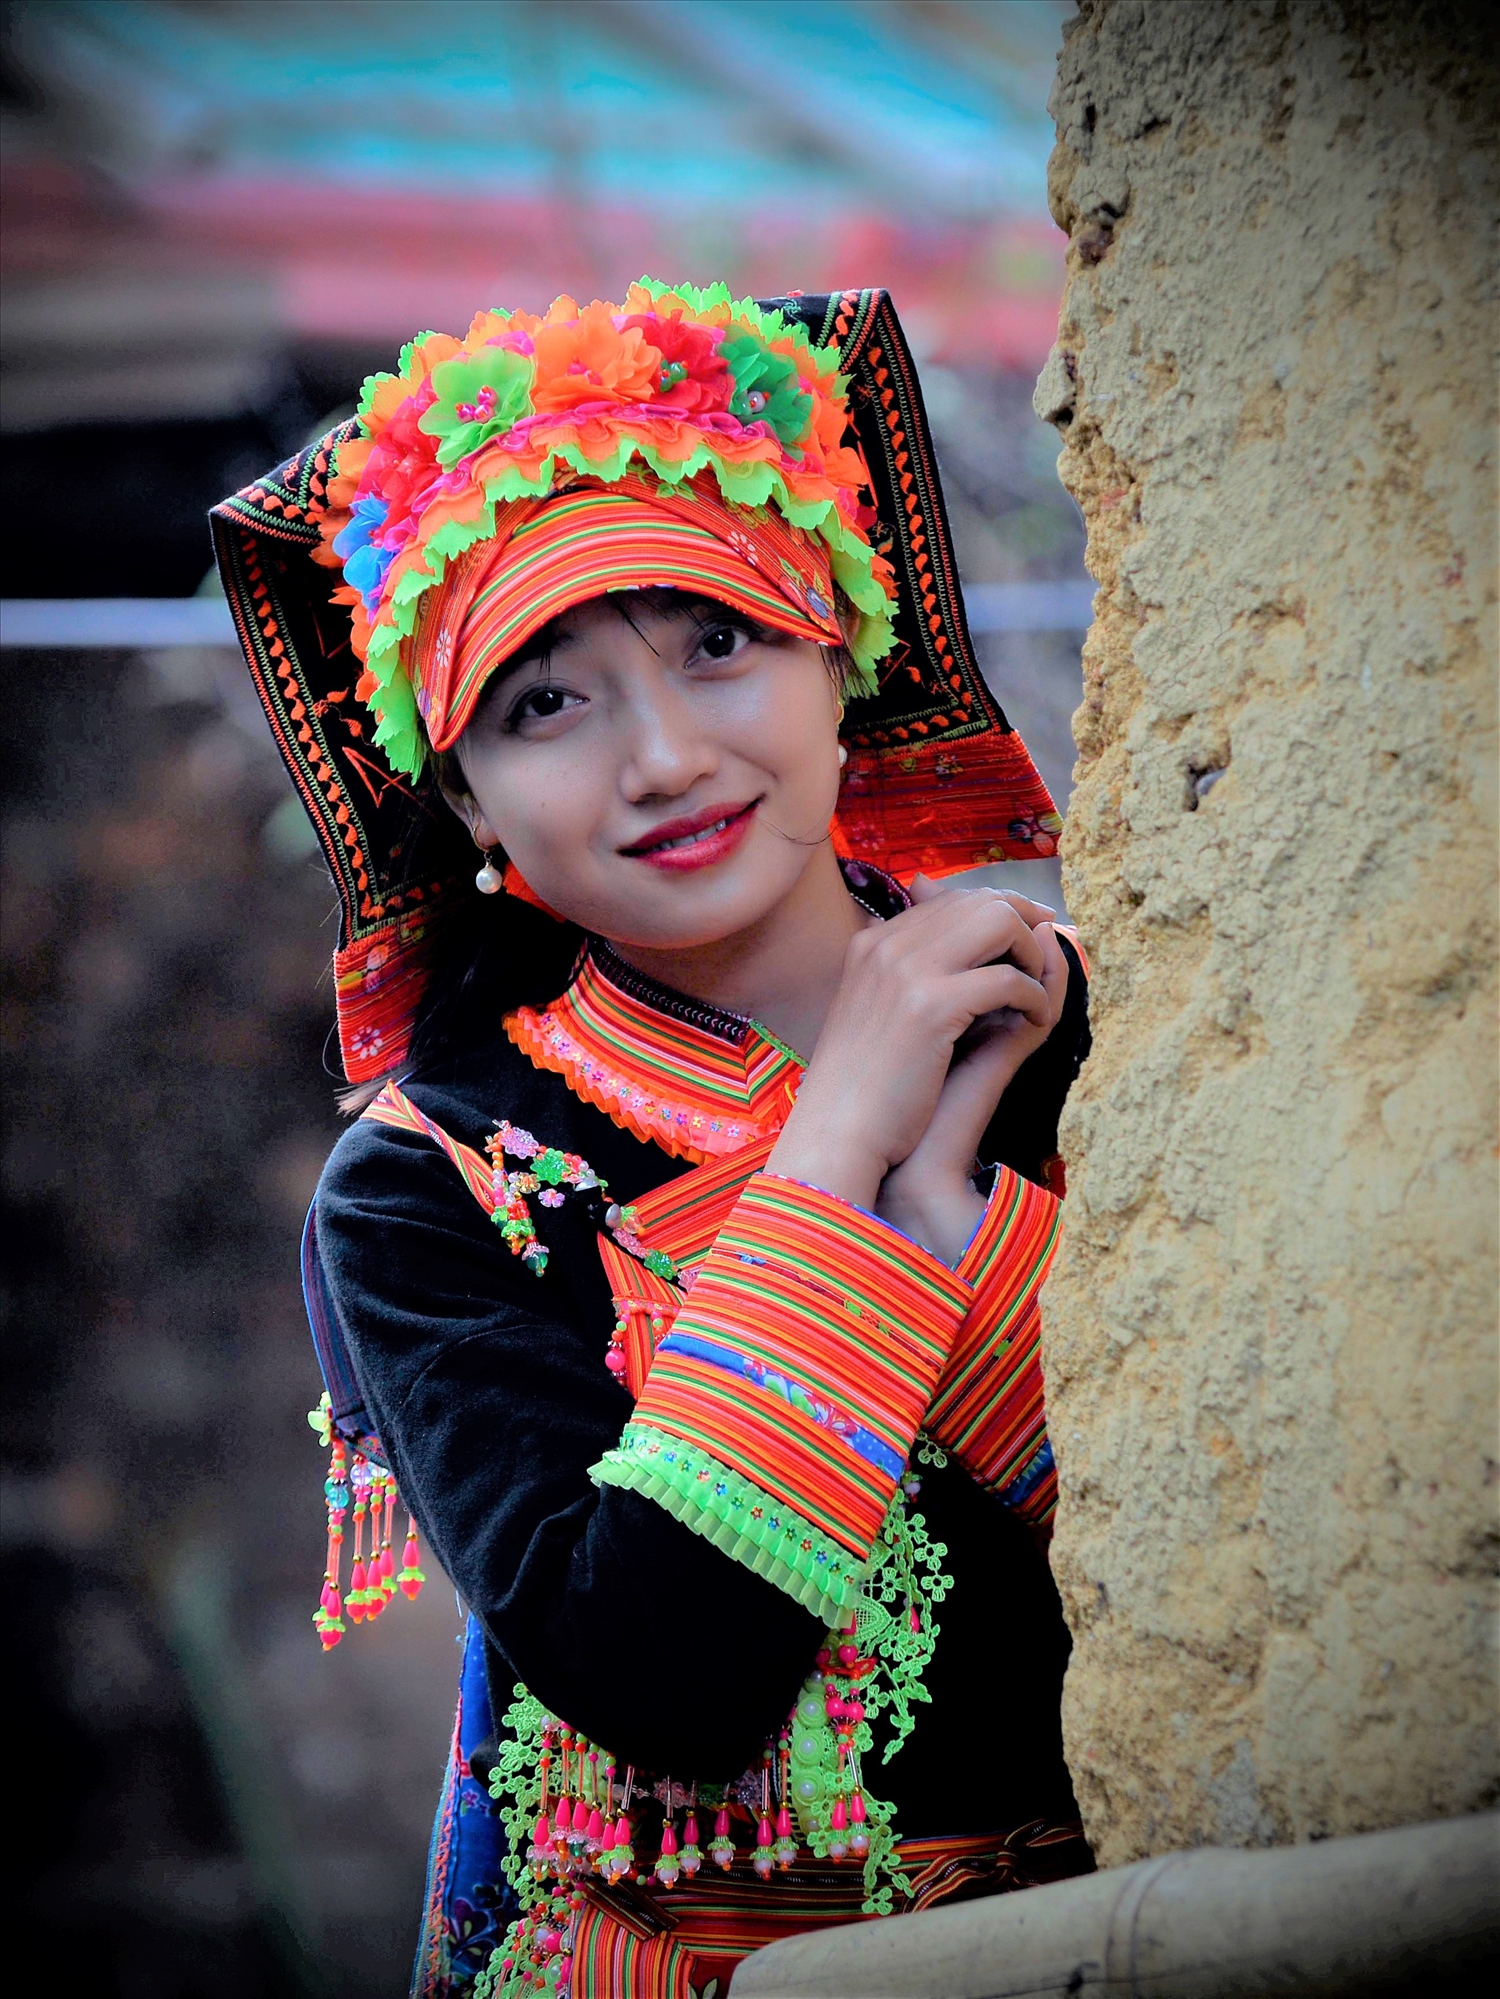 Trang phục cầu kỳ bên nếp nhà trình tường truyền thống là chân dung của thiếu nữ Dao đỏ vùng cao Lai Châu.